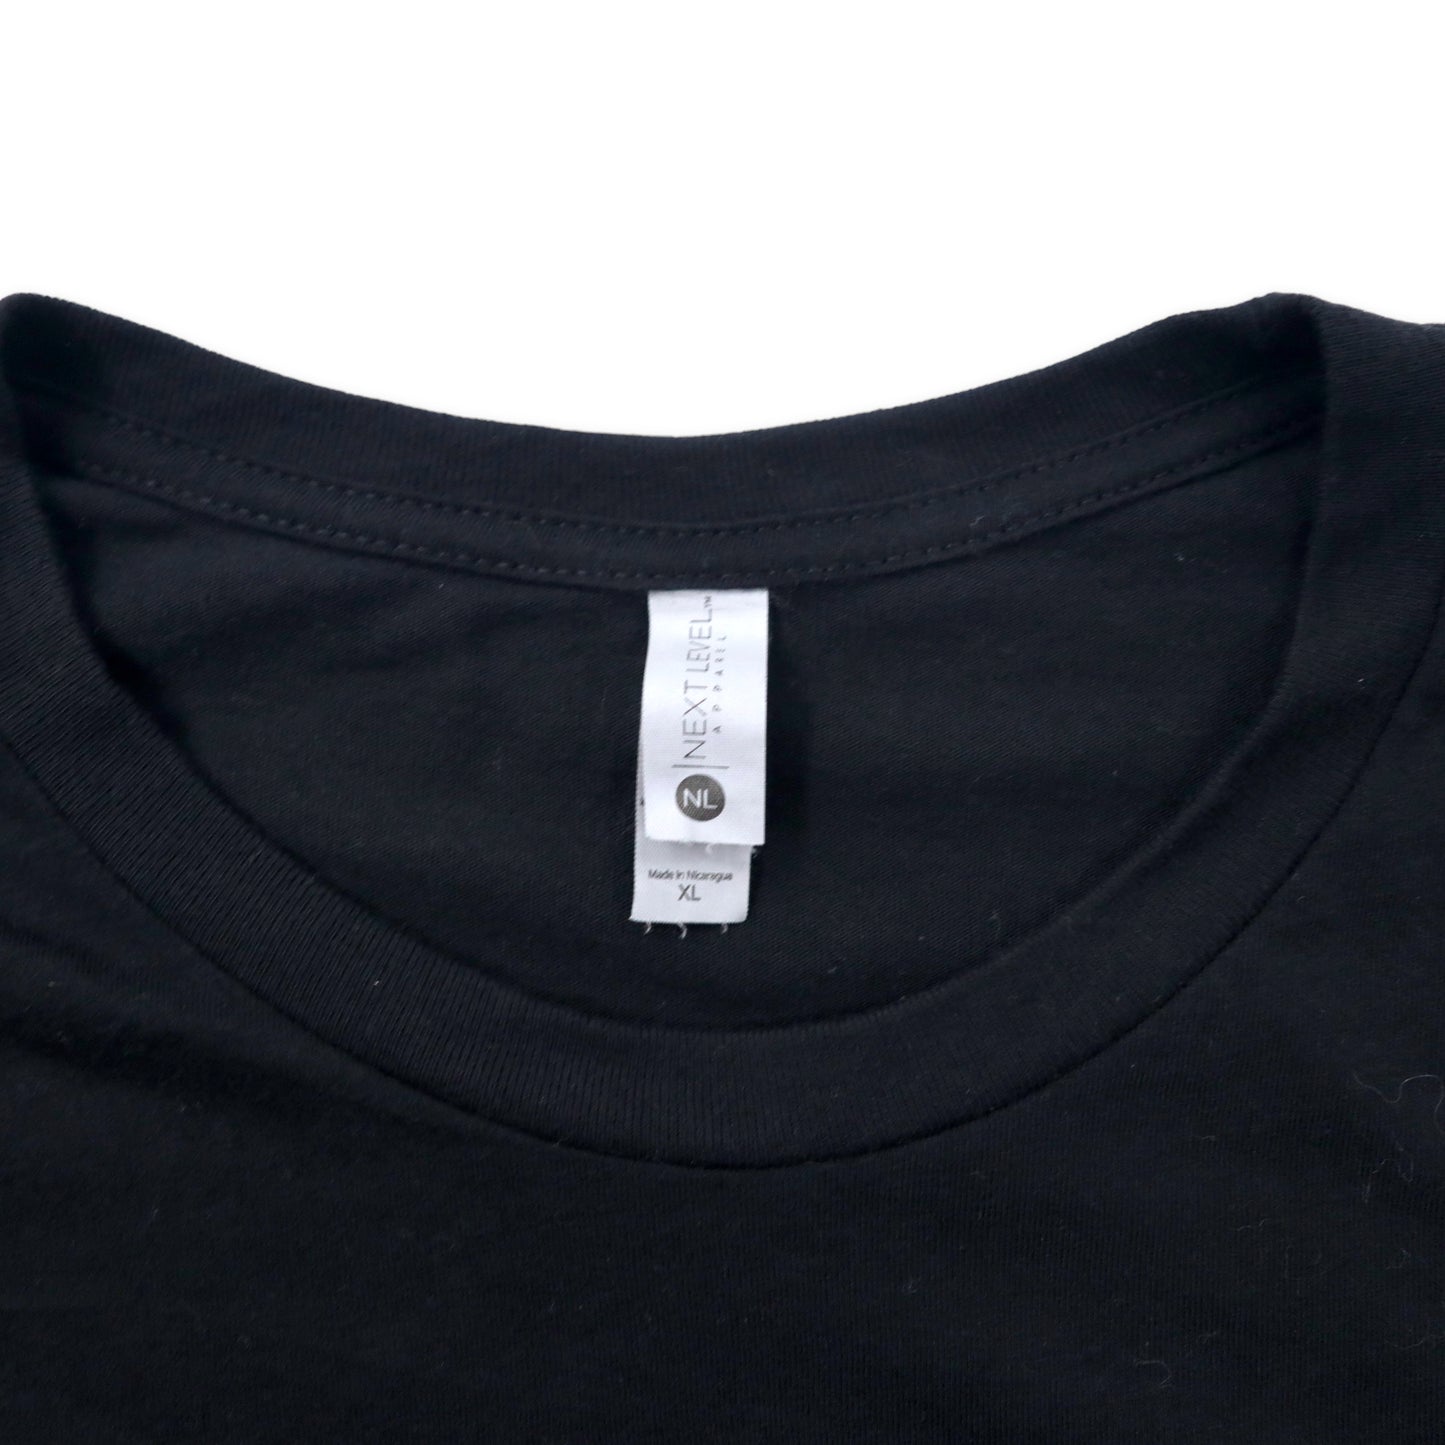 NEXT LEVEL プリントTシャツ XL ブラック コットン POINTS BET ビッグサイズ